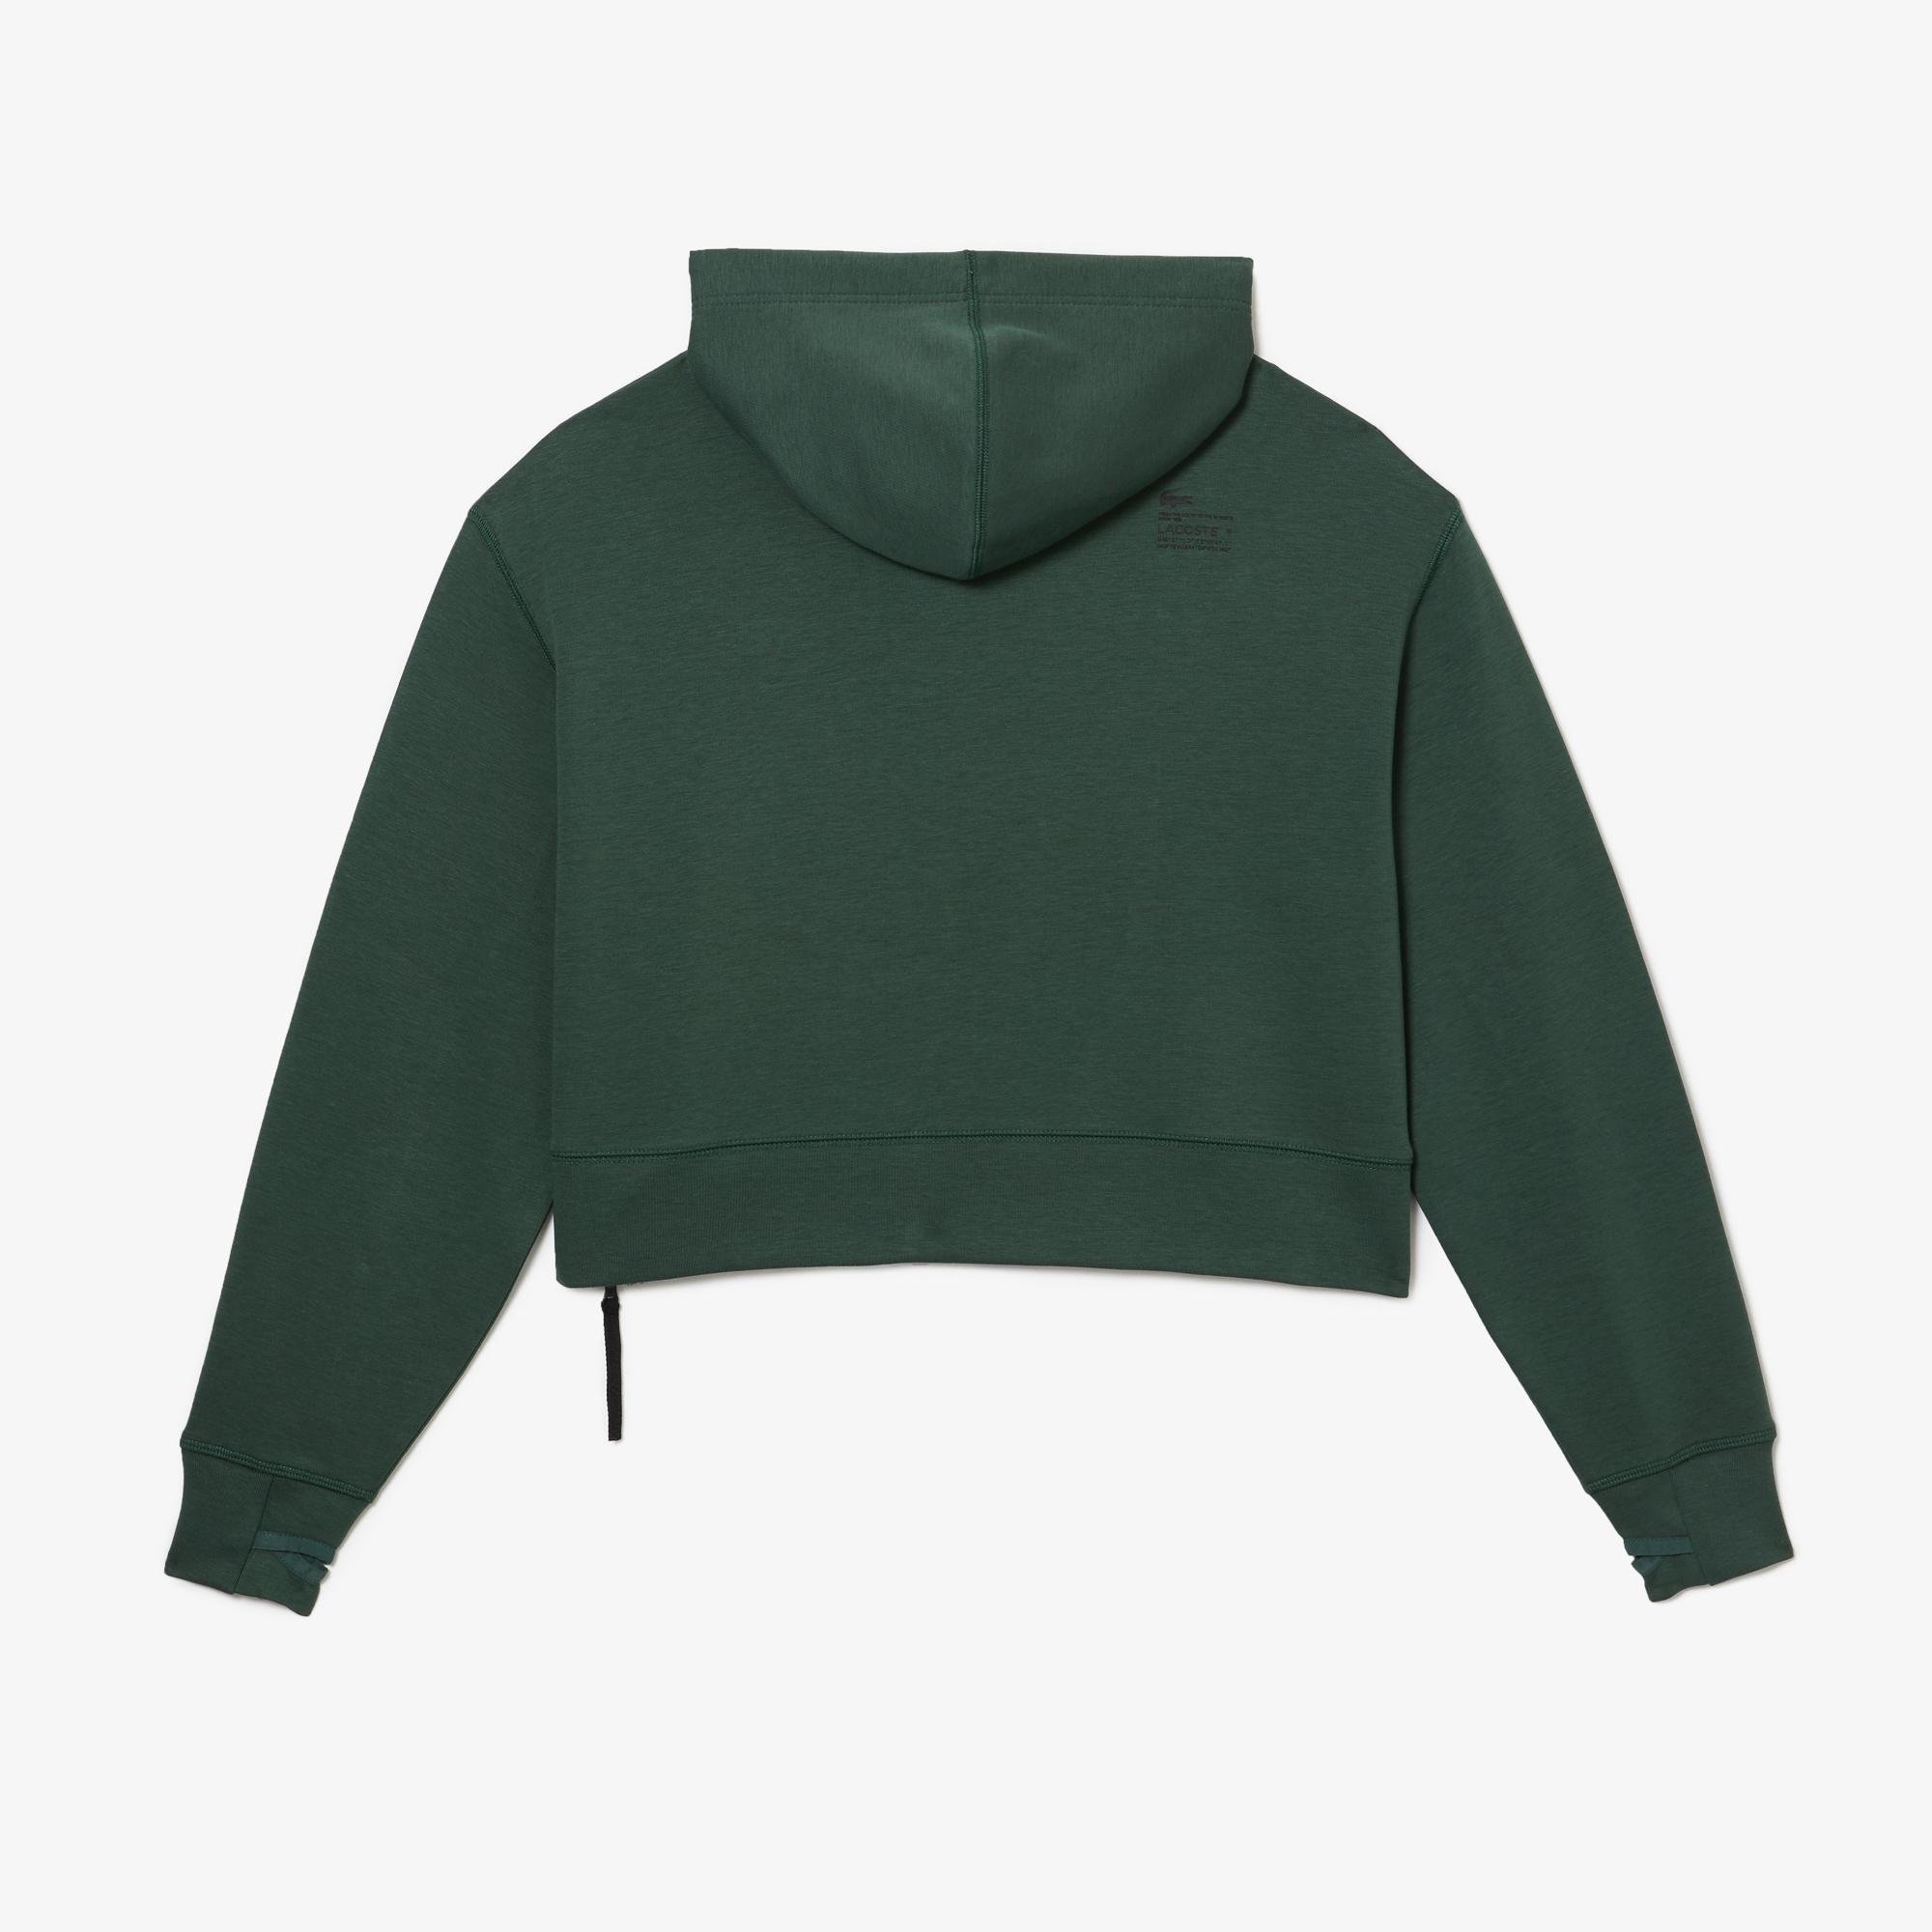 Lacoste Women's Hooded Sweatshirt